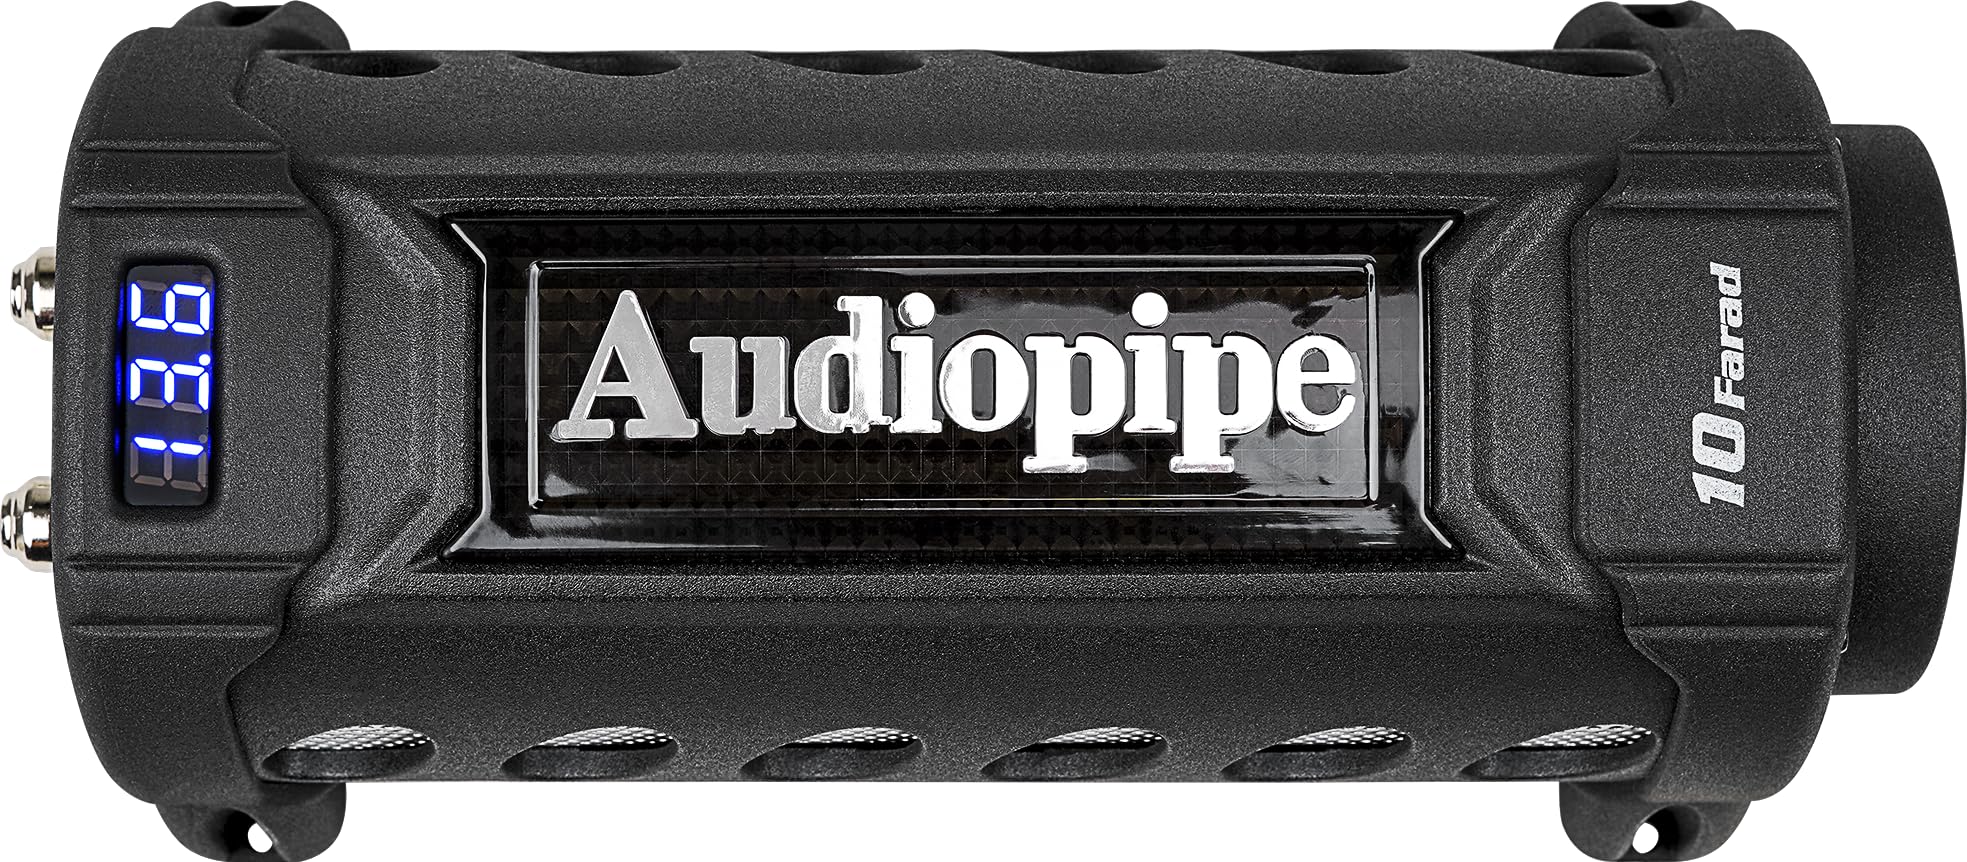 Audiopipe-ACAPD10000